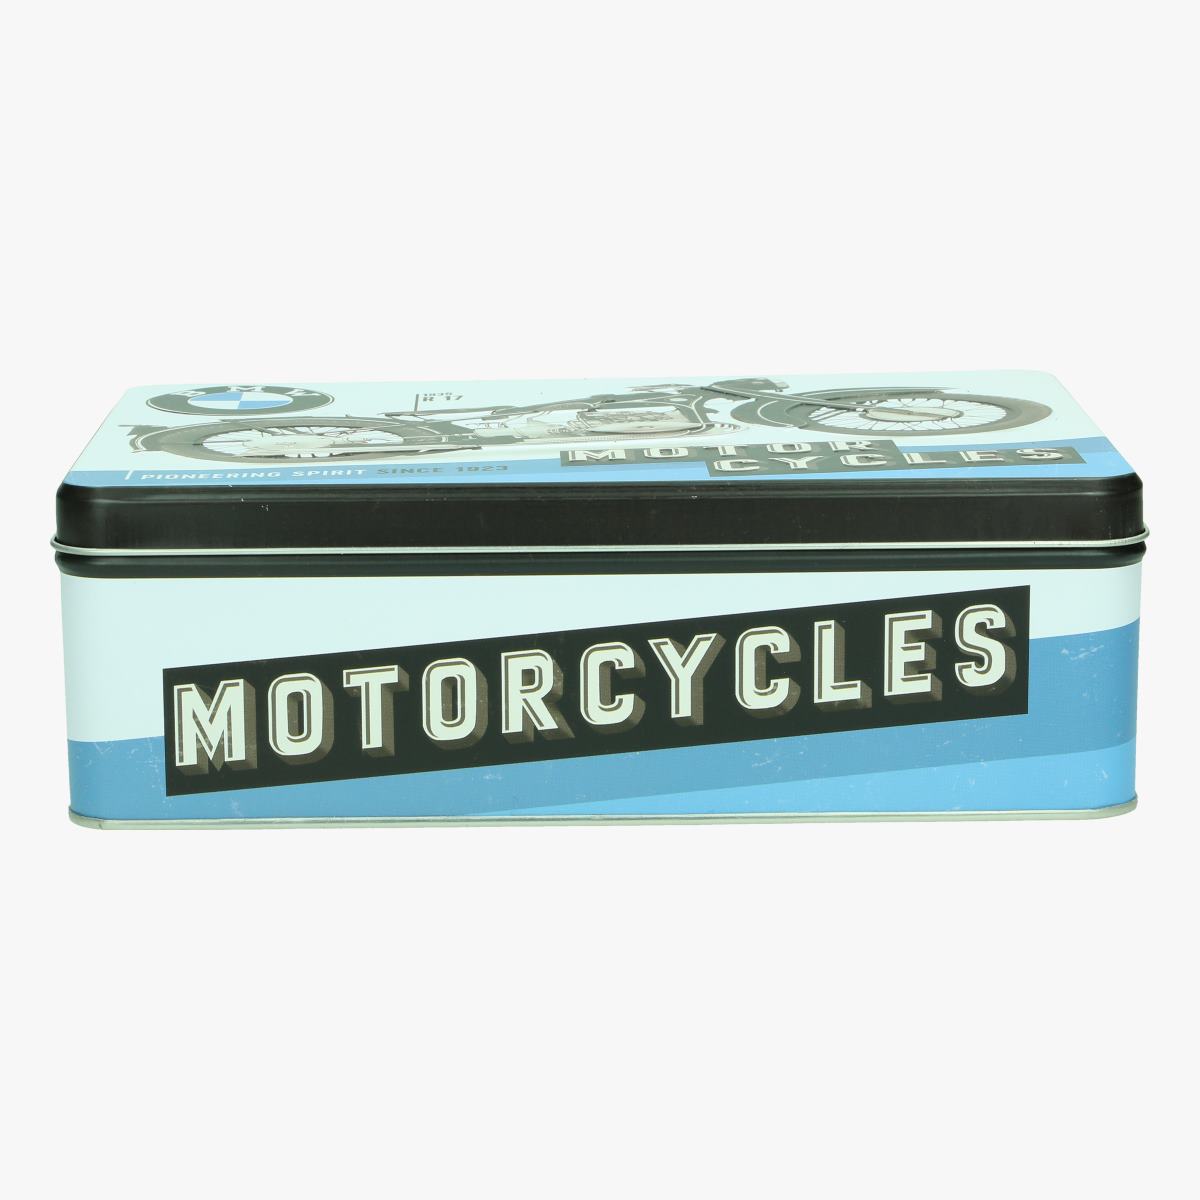 Afbeeldingen van blikken doos BMW moto cycles repro